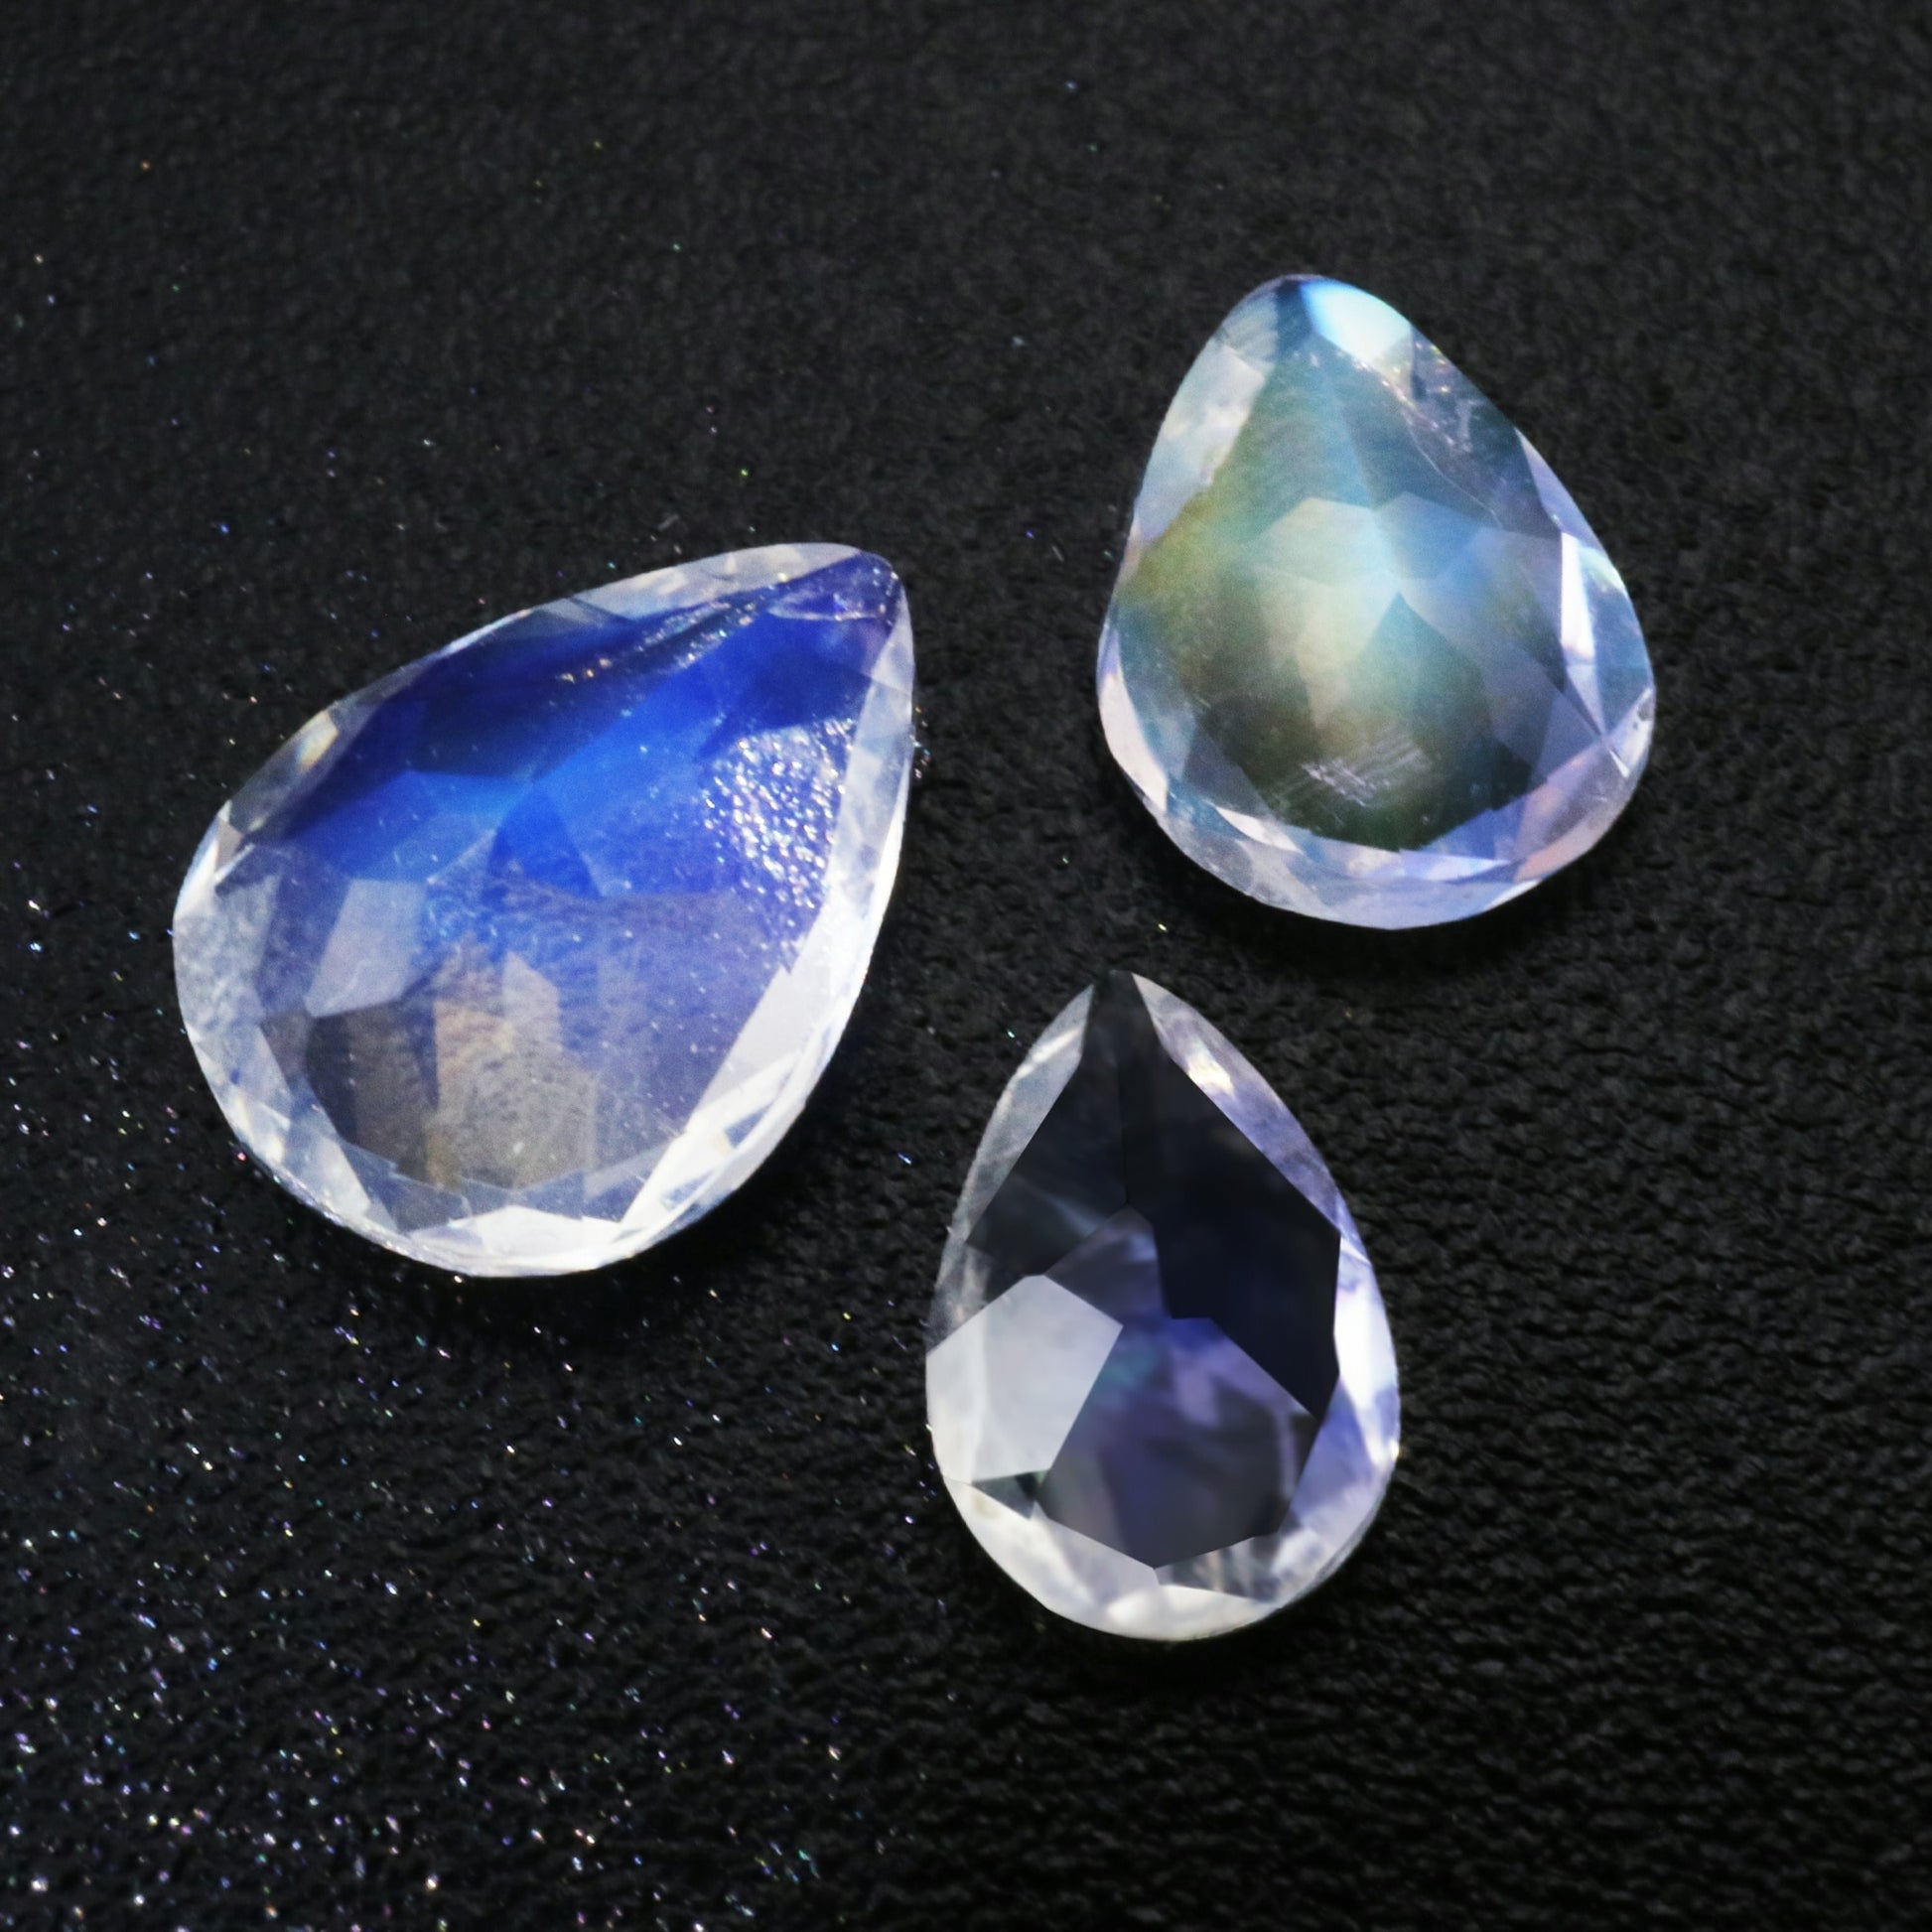 Three sparkling tear drop cut blue moonstones.